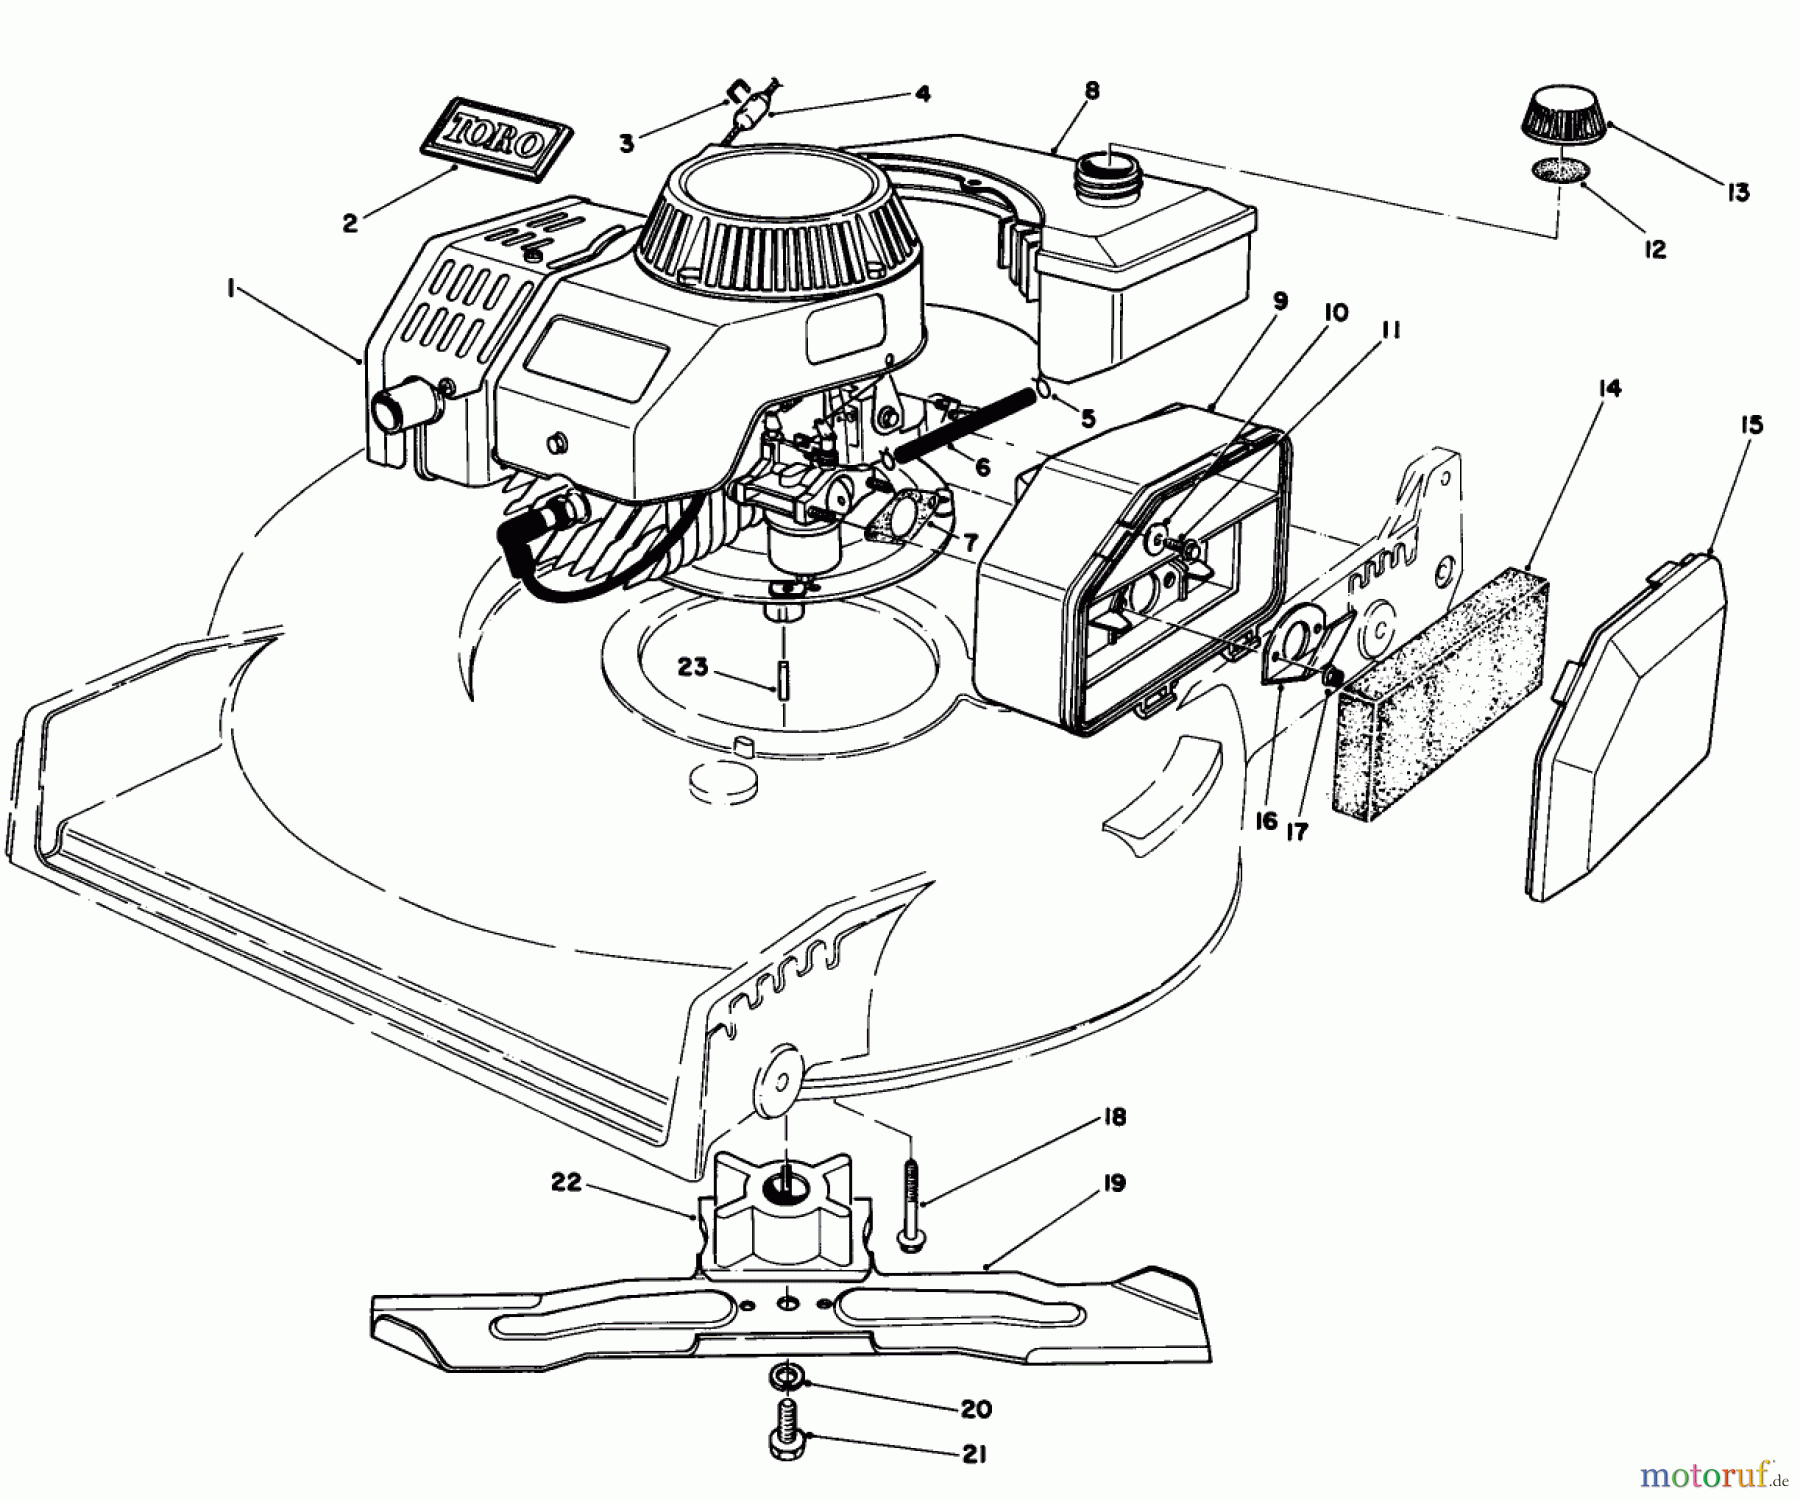  Toro Neu Mowers, Walk-Behind Seite 1 20581 - Toro Lawnmower, 1985 (5000001-5999999) ENGINE ASSEMBLY